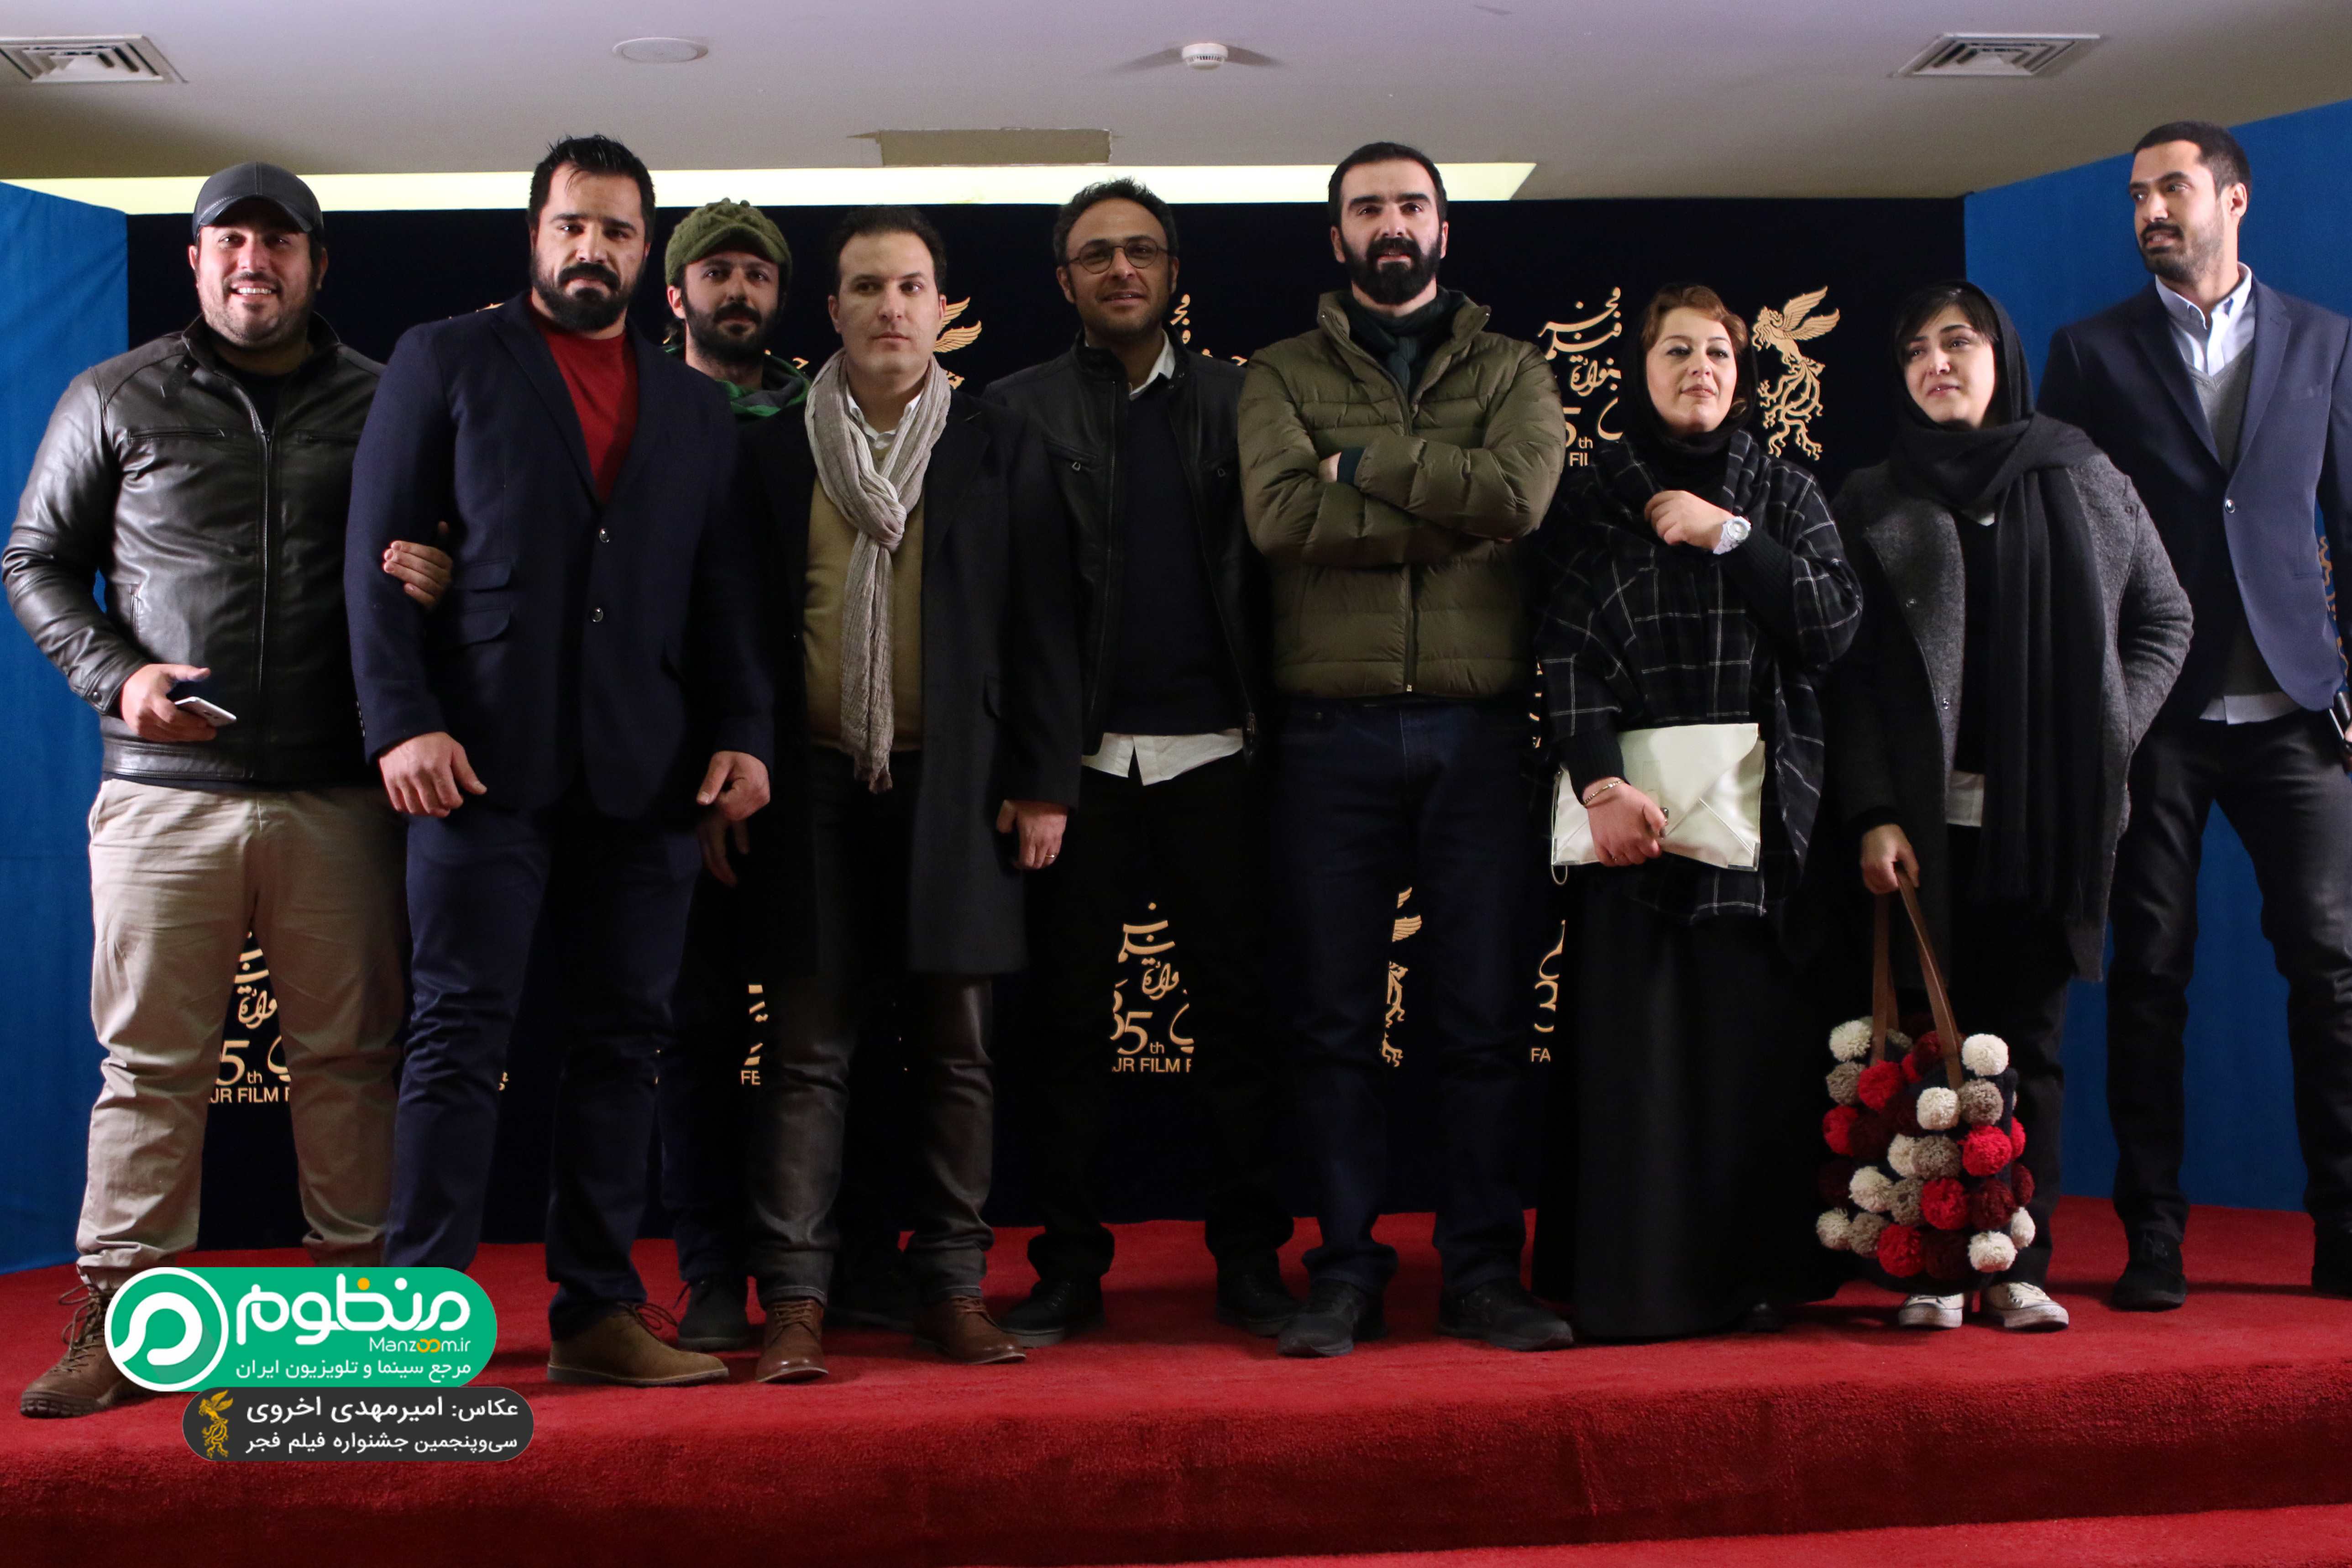 محسن قرایی در فرش قرمز فیلم سینمایی سد معبر به همراه محسن کیایی، باران کوثری، علیرضا کمالی و سپیده عبدالوهاب